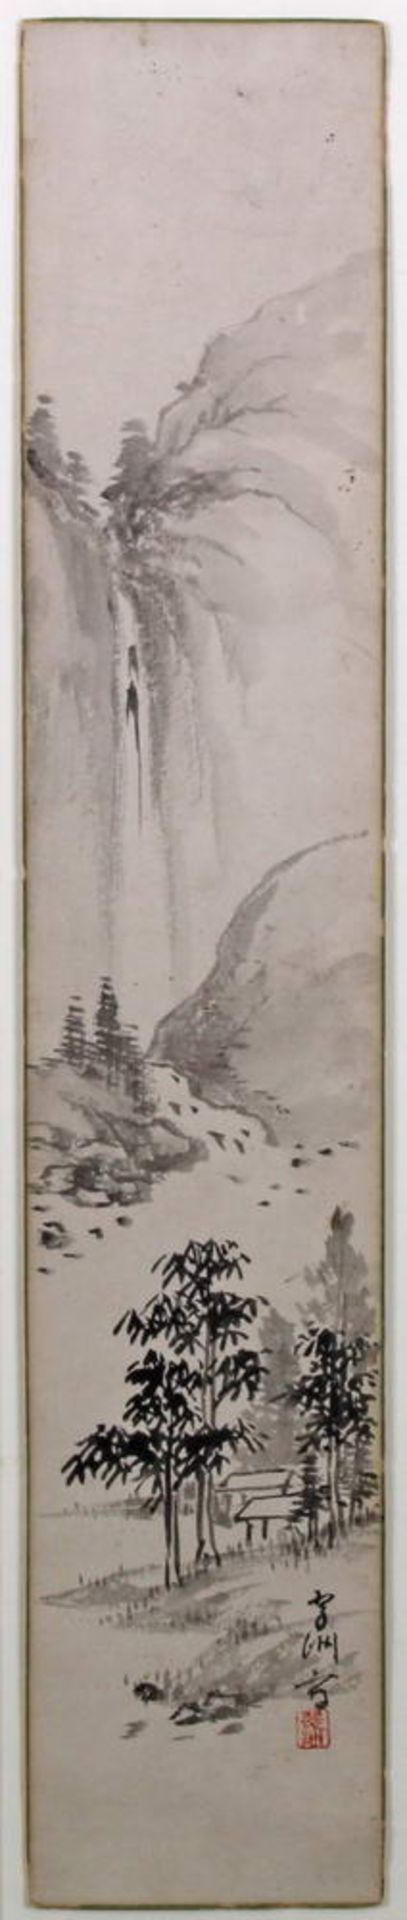 Tuschezeichnung, "Wasserfall", Japan, 20. Jh., 35.5 x 7 cm, unter Glas gerahmt- - -25.00 % buyer's - Bild 2 aus 6